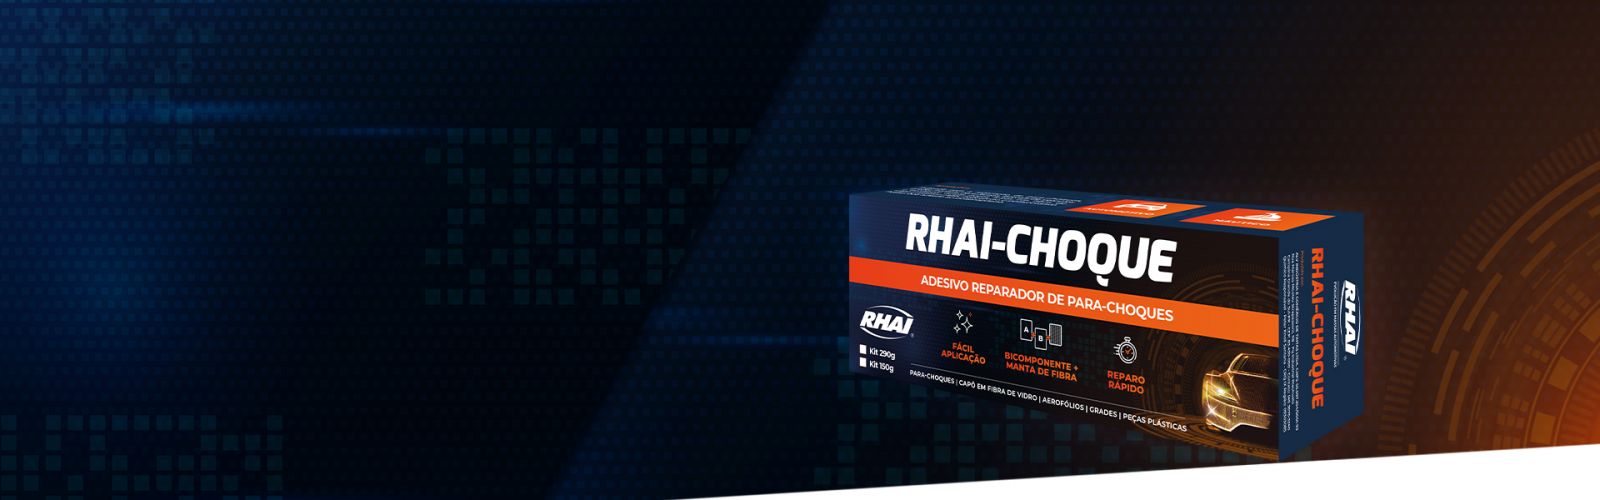 Lançamento RHAI-CHOQUE